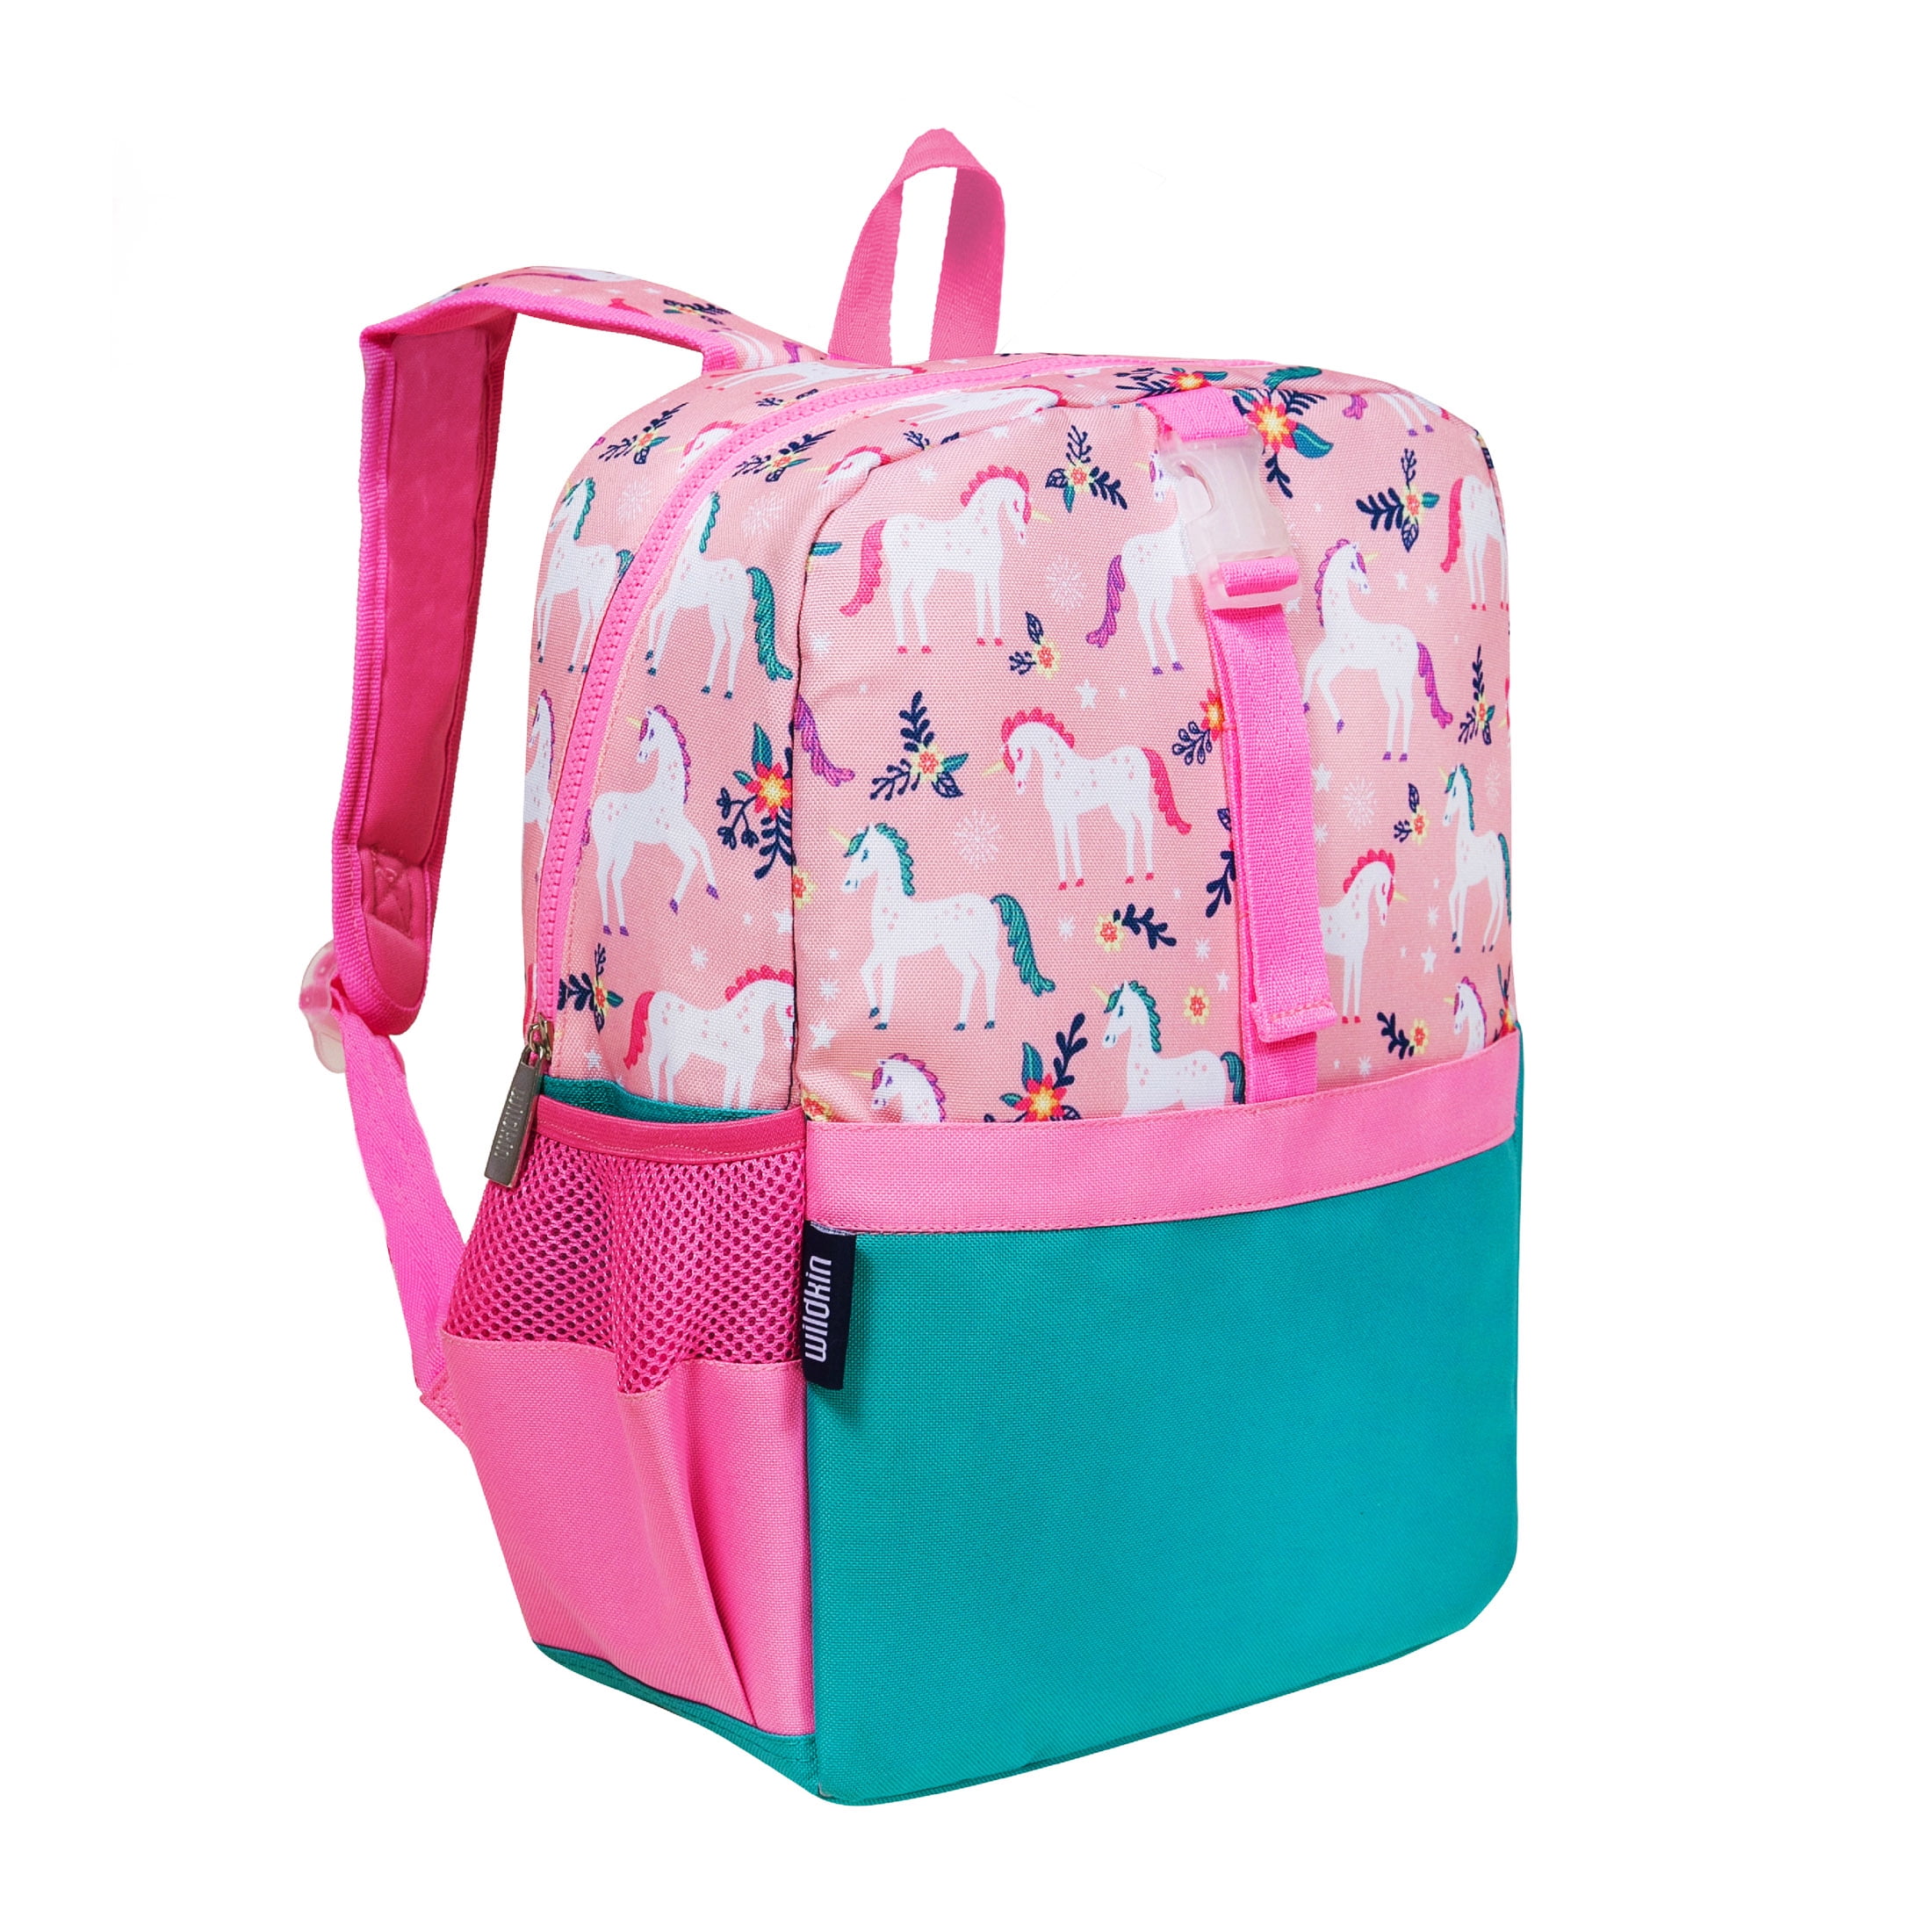 Wildkin Kids Pack-It-All 15 Inch School & Travel Backpack in 